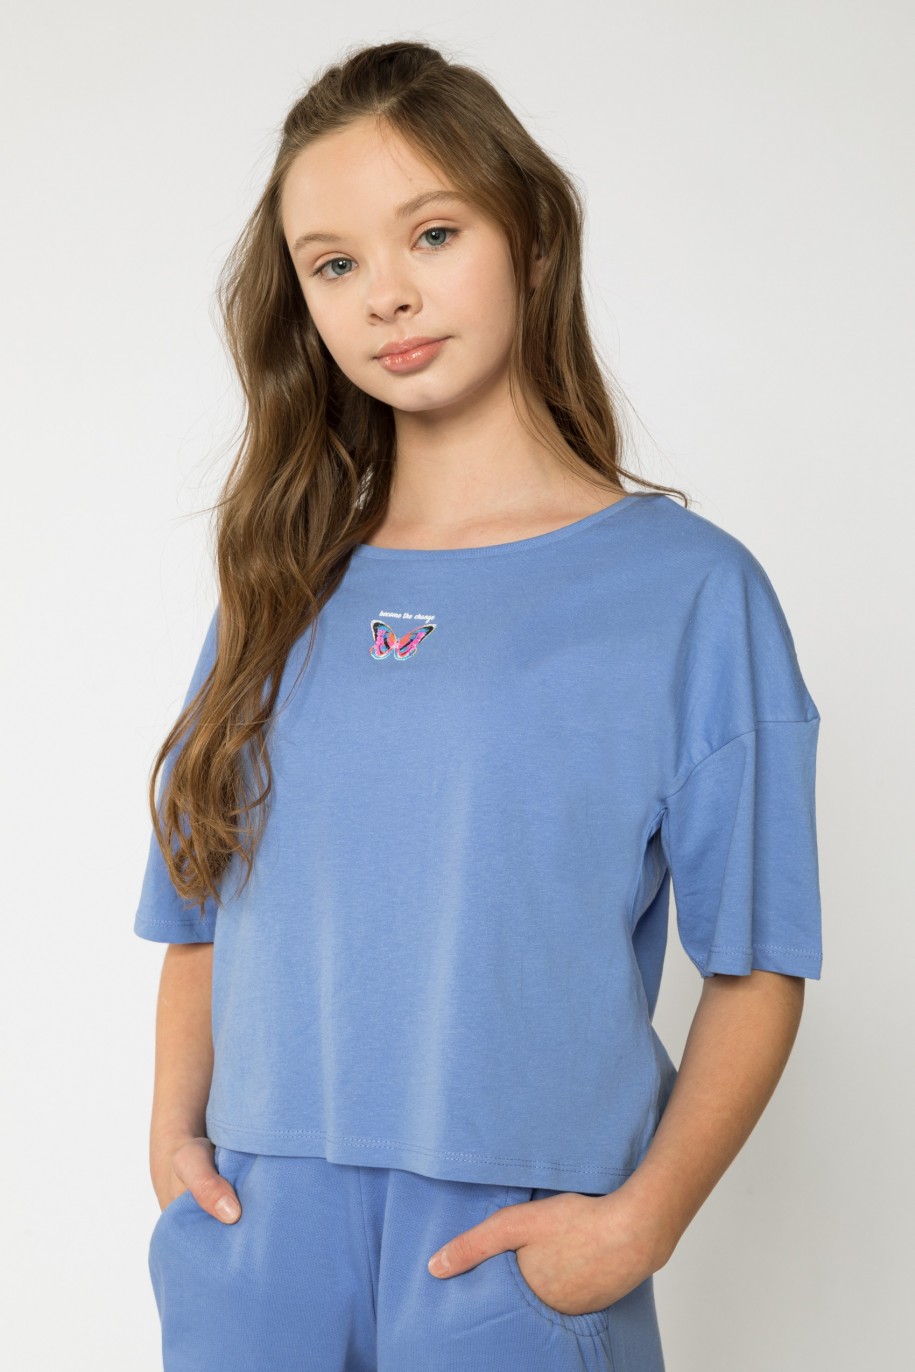 Niebieski t-shirt dla dziewczyny BUTTERFLY - 32526